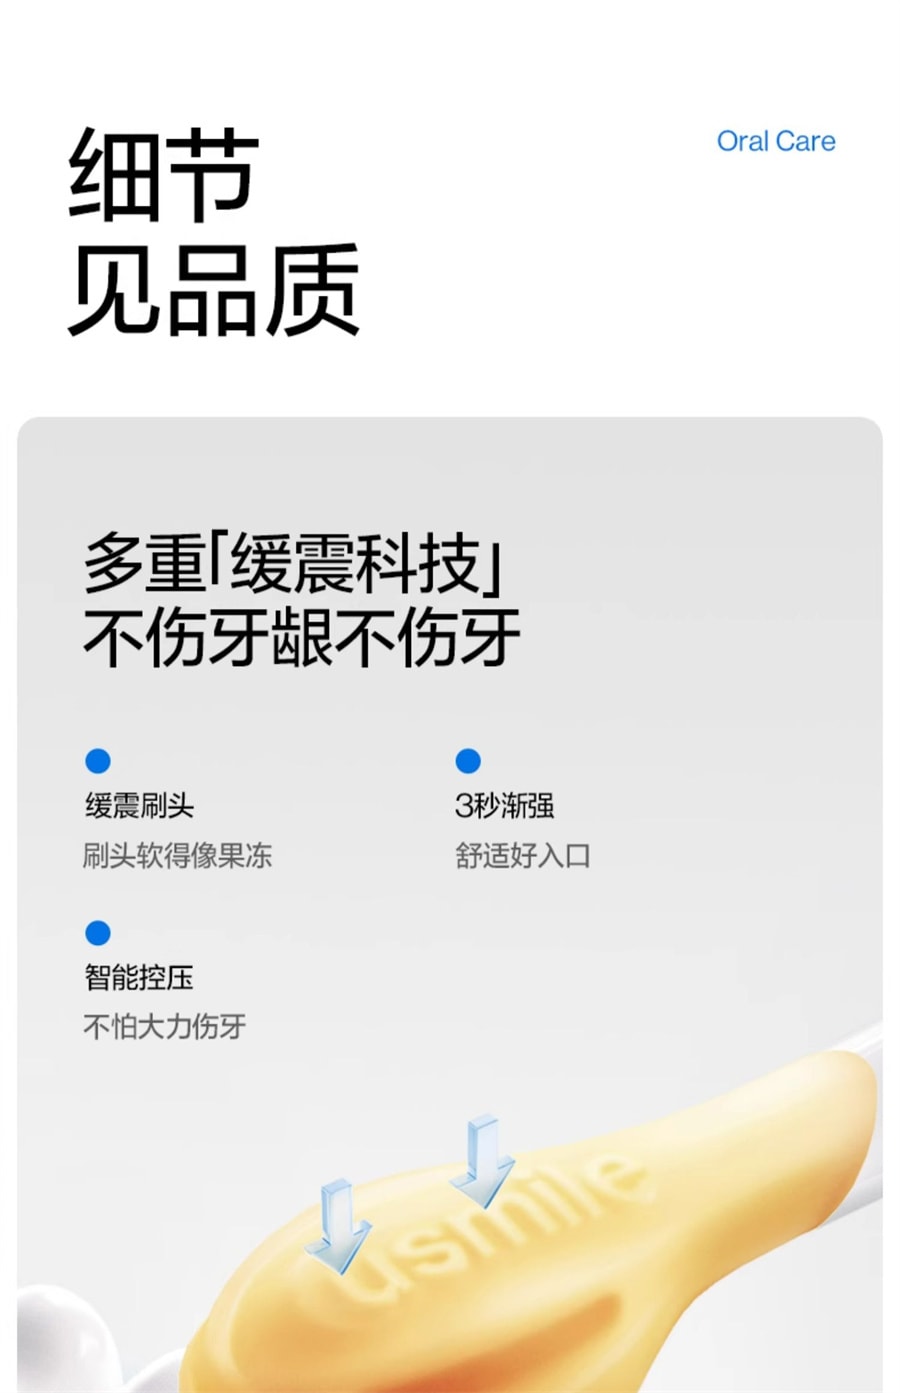 【中国直邮】USMILE笑容加  儿童电动牙刷充电声波全自动软毛3-12岁宝宝牙刷Q10  宇宙蓝.